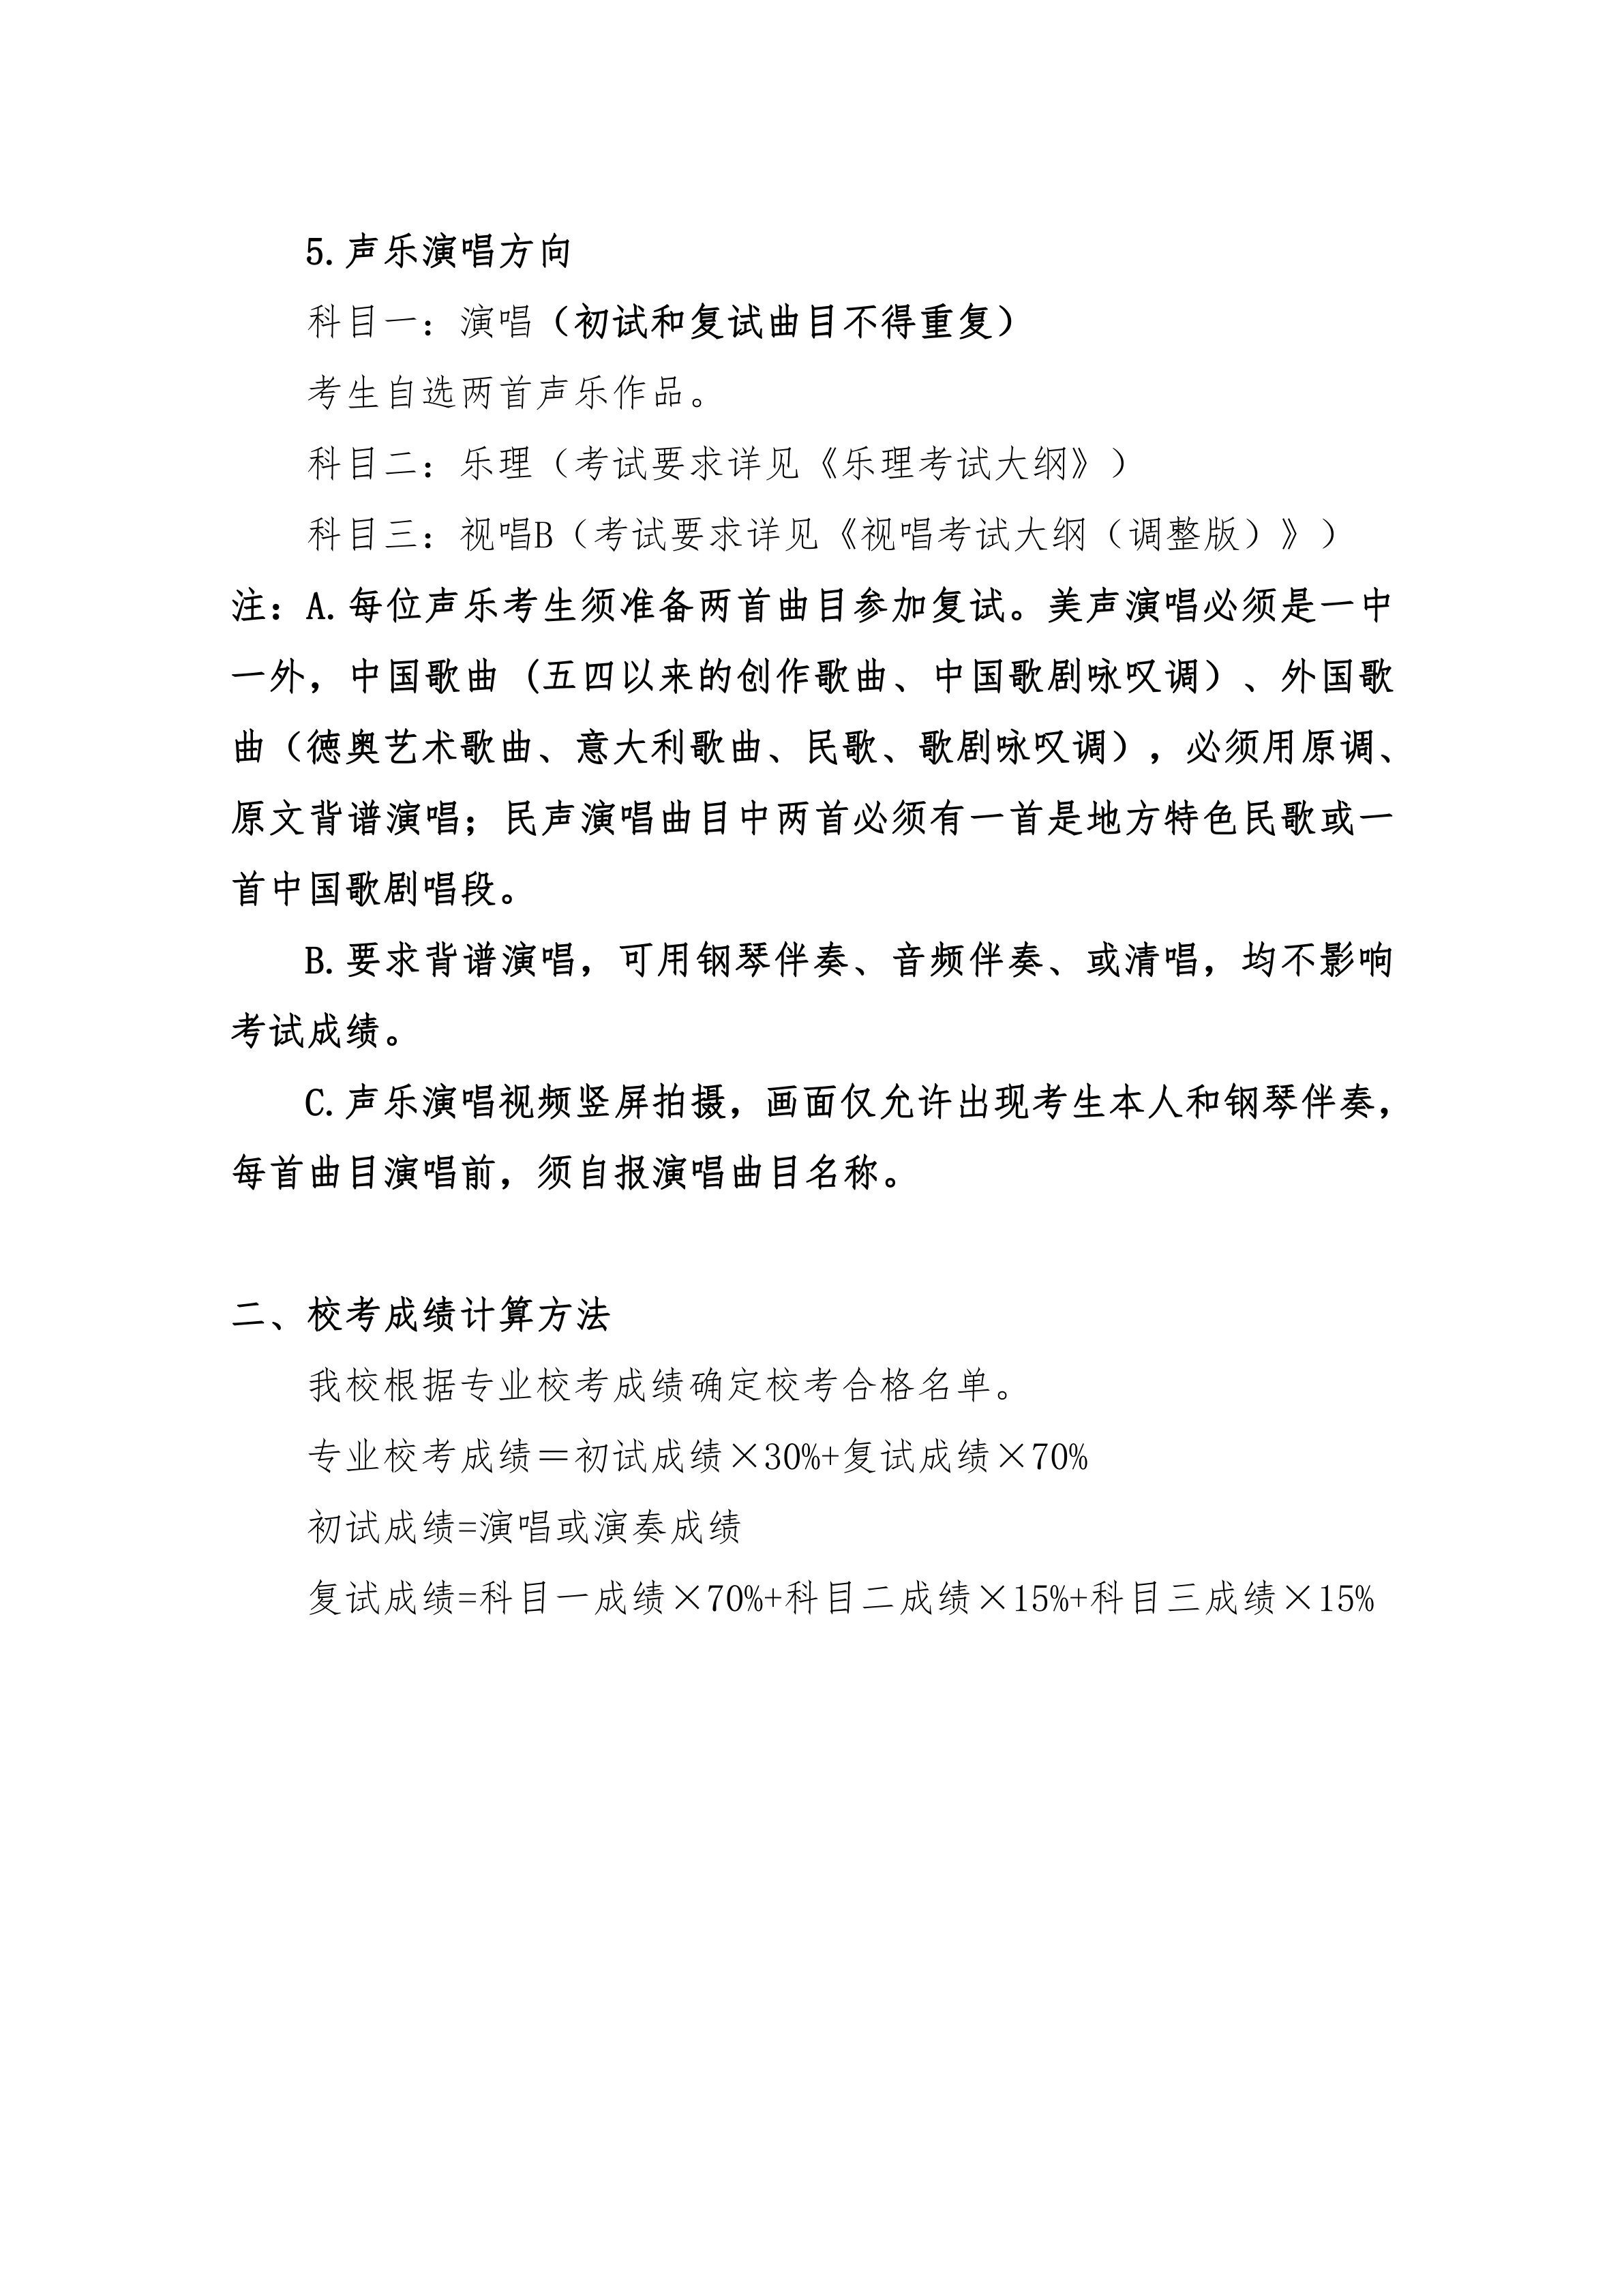 附件2：+《上海大学音乐学院2021年音乐表演专业复试考试内容及校考成绩计算方法（调整版）》_5.png